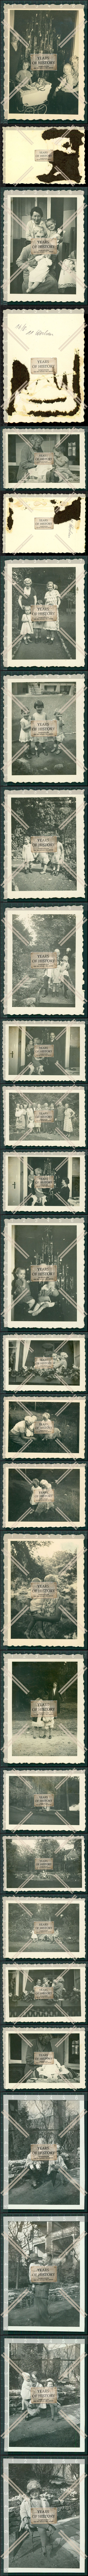 Orig. Foto 25x Alte Fotos Kinder Spielzeug Schildkrt Steiff Weihnachten 1933 